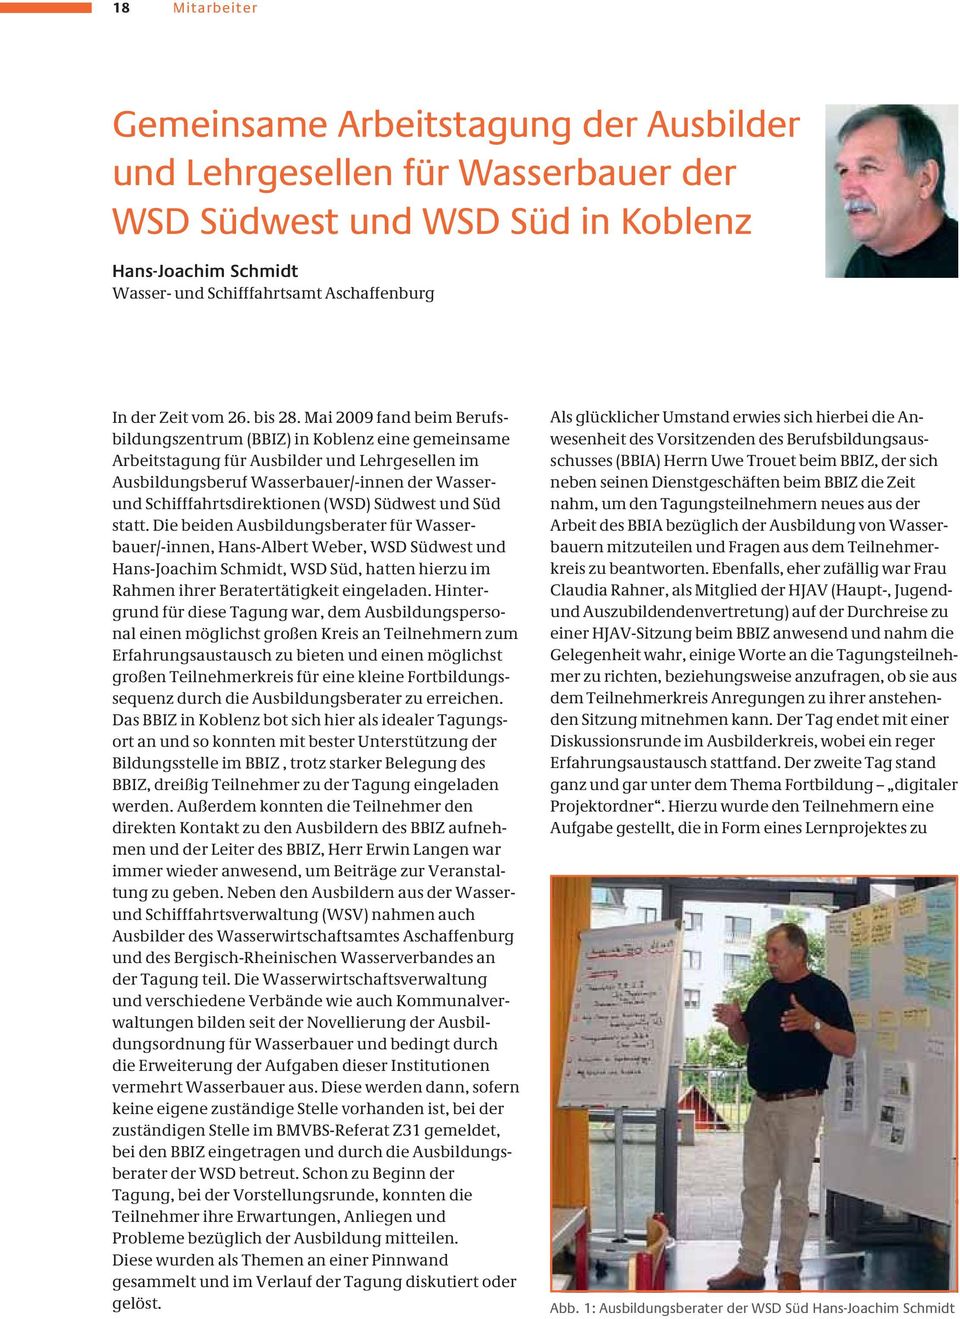 Mai 2009 fand beim Berufsbildungszentrum (BBIZ) in Koblenz eine gemeinsame Arbeitstagung für Ausbilder und Lehrgesellen im Ausbildungsberuf Wasserbauer/-innen der Wasserund Schifffahrtsdirektionen